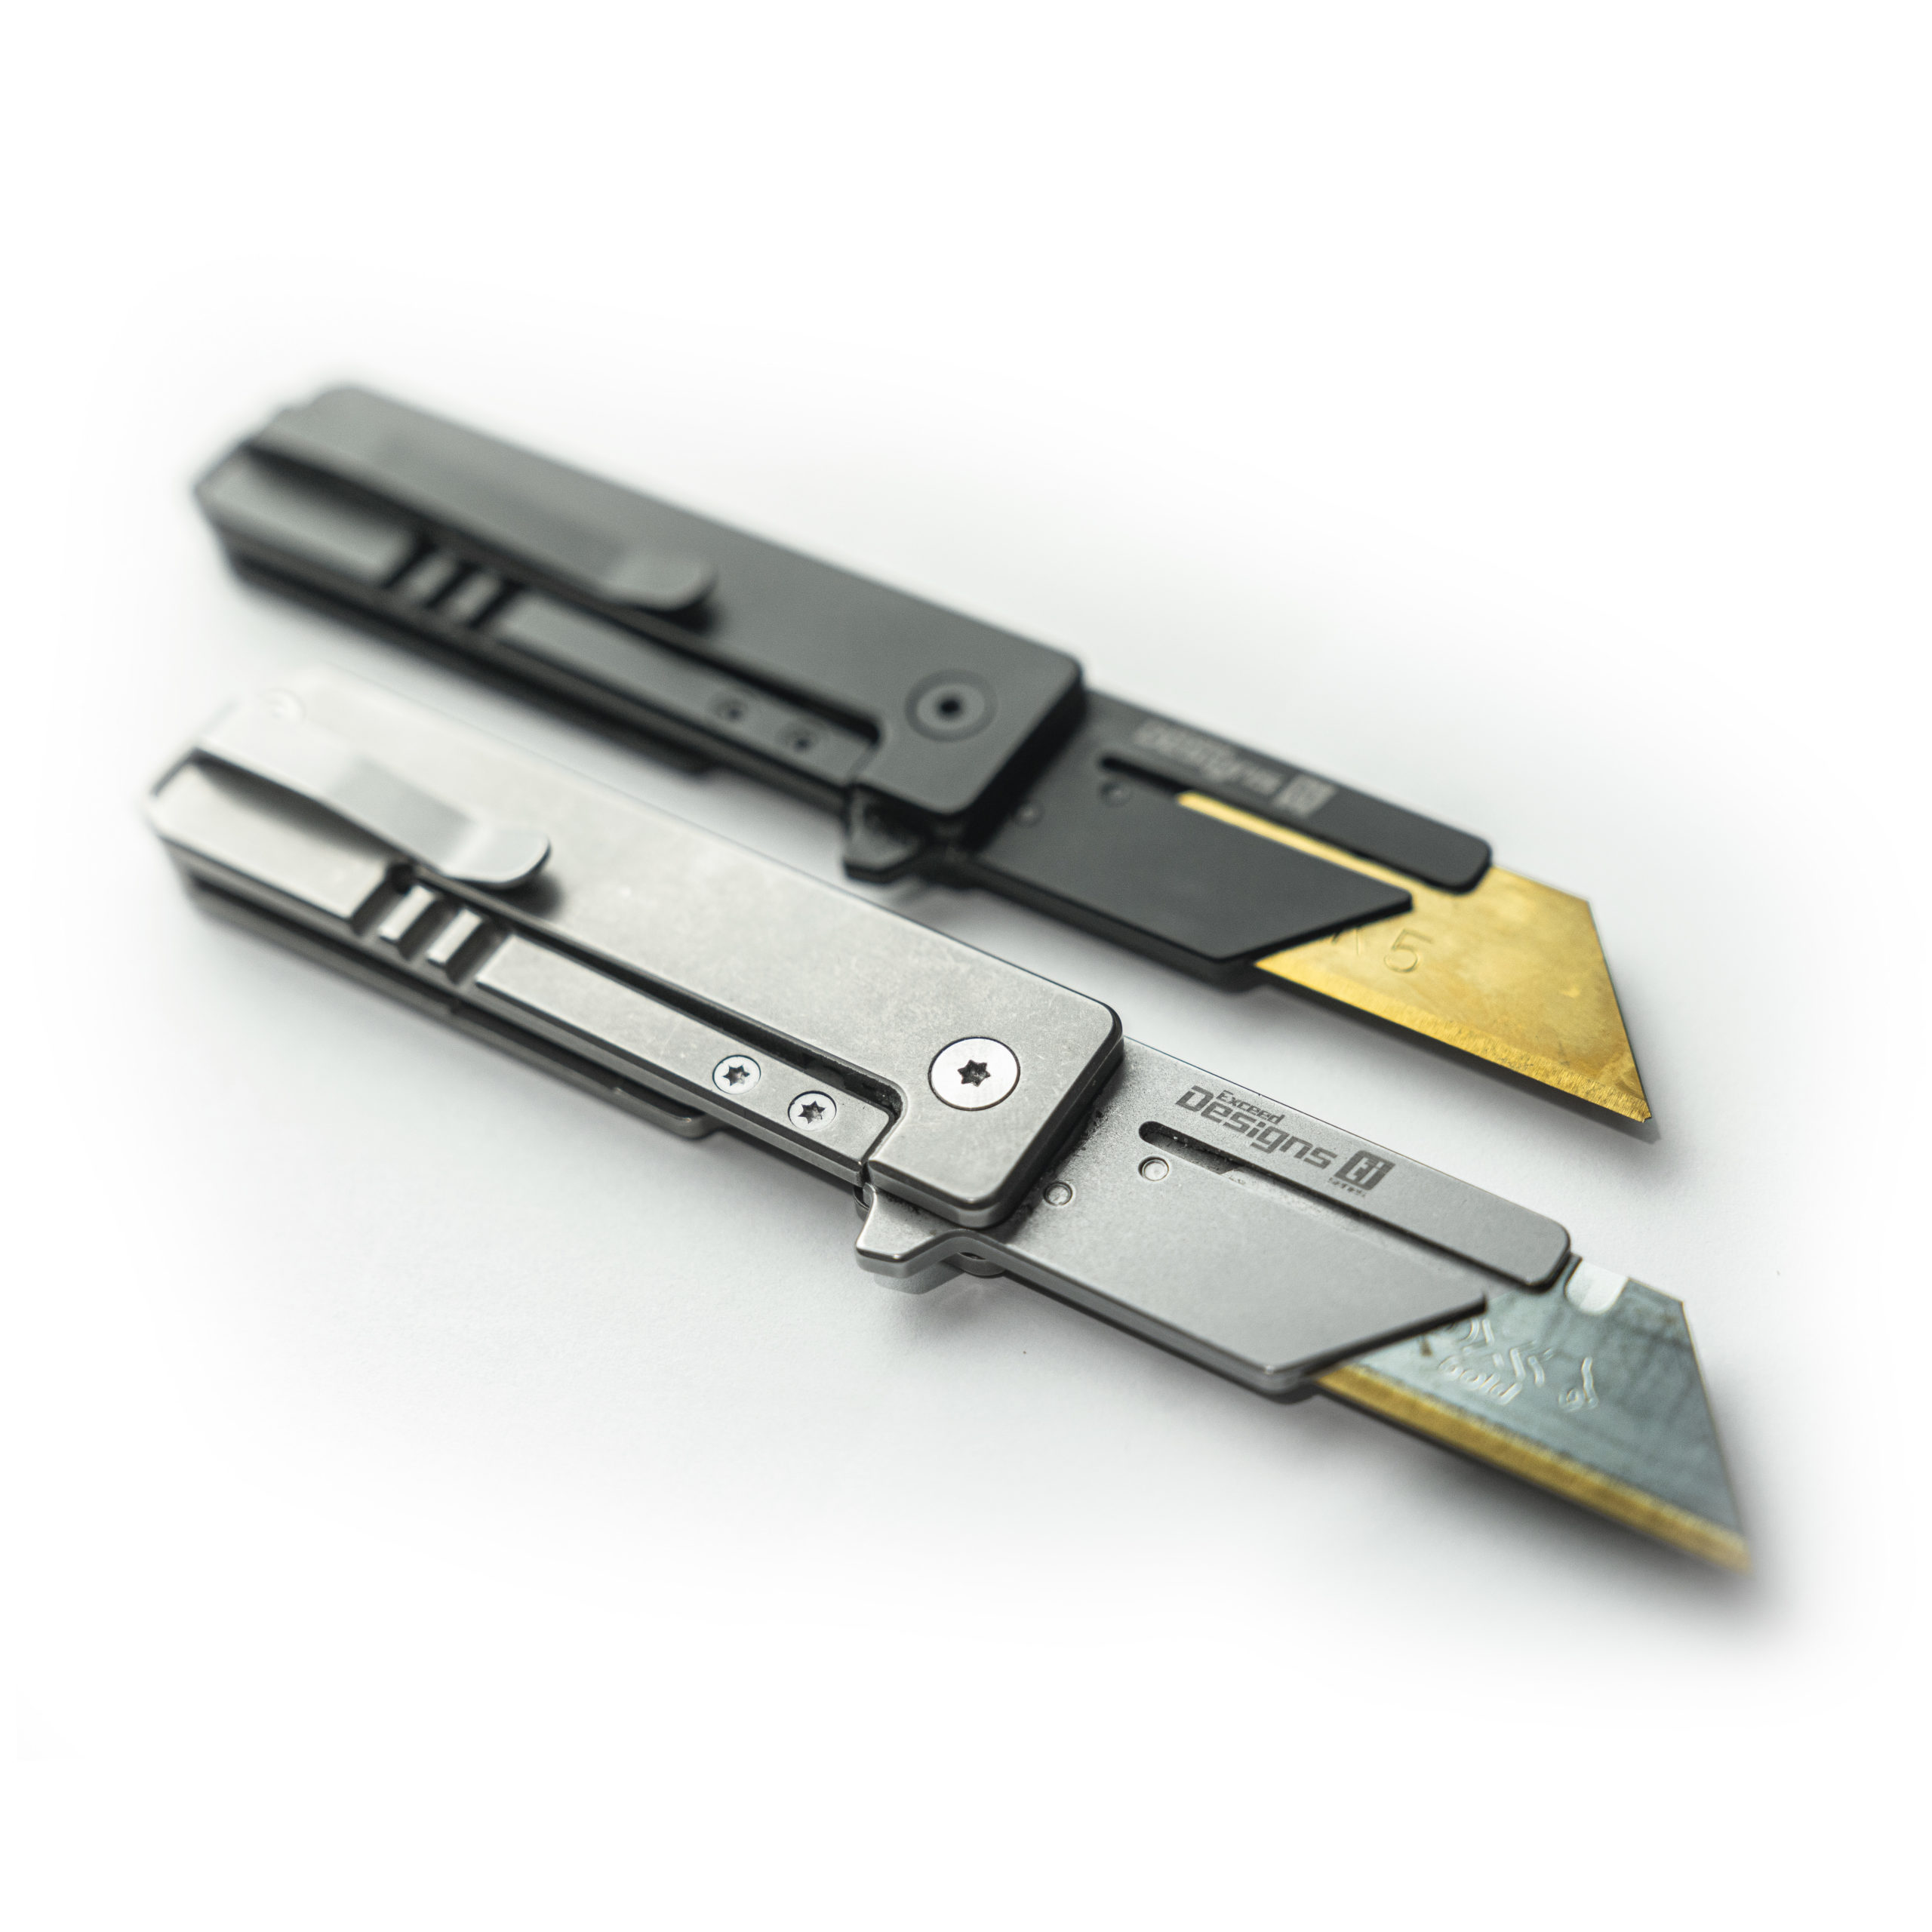 TiRant RAZOR V3 Utility Knife (Jet-Black 6AL-4V Titanium) – Exceed